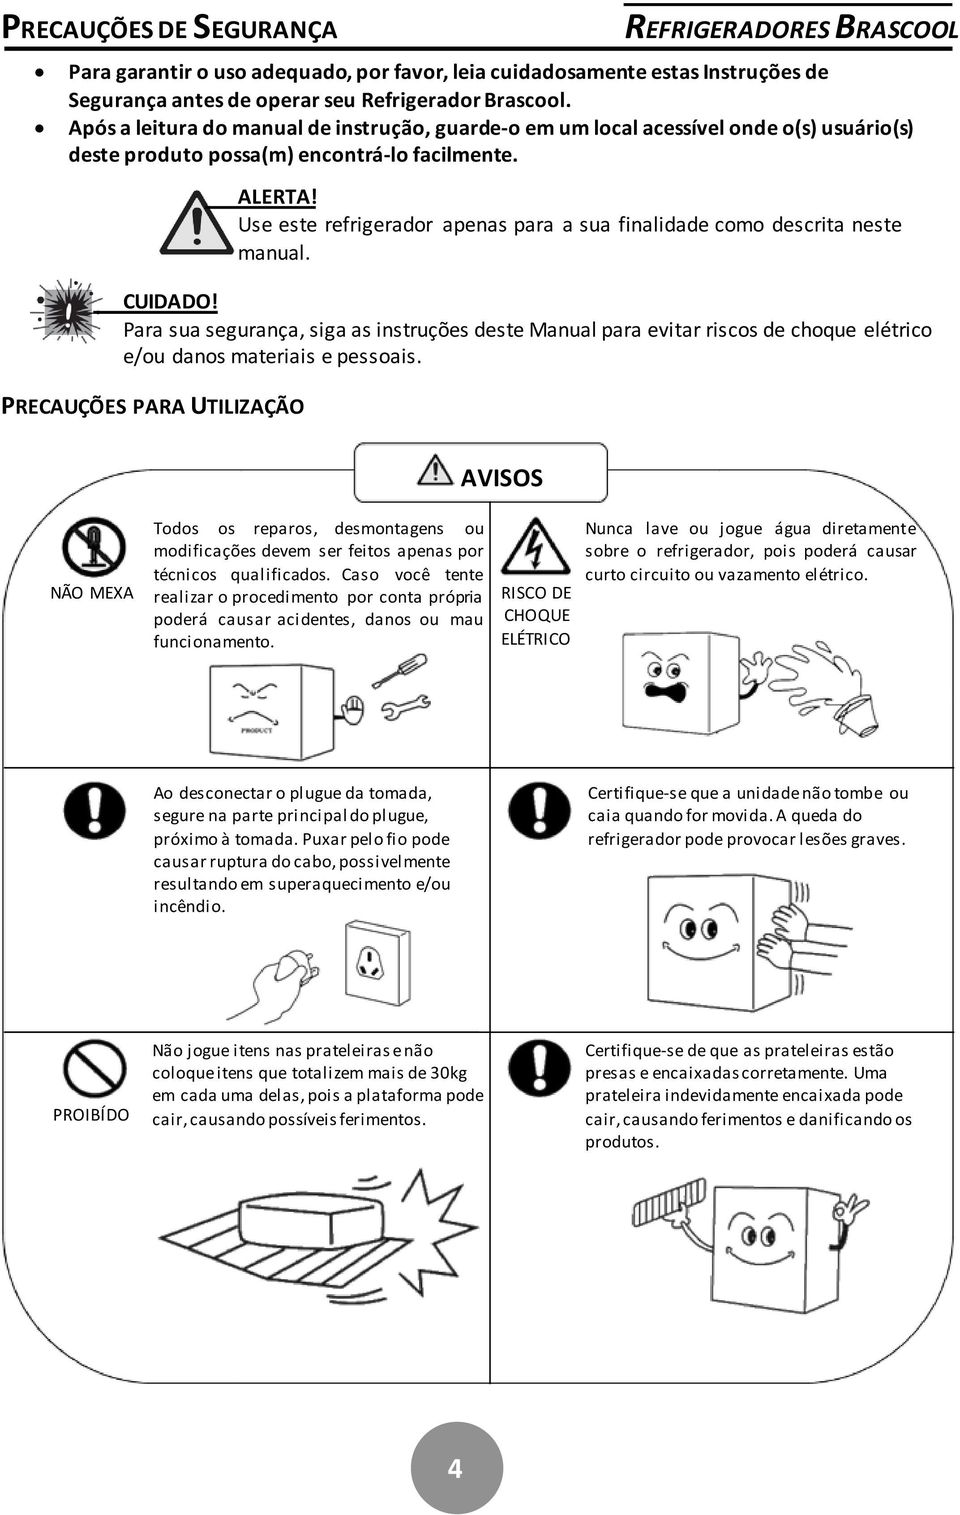 Para sua segurança, siga as instruções deste Manual para evitar riscos de choque elétrico e/ou danos materiais e pessoais. PRECAUÇÕES PARA UTILIZAÇÃO ALERTA!